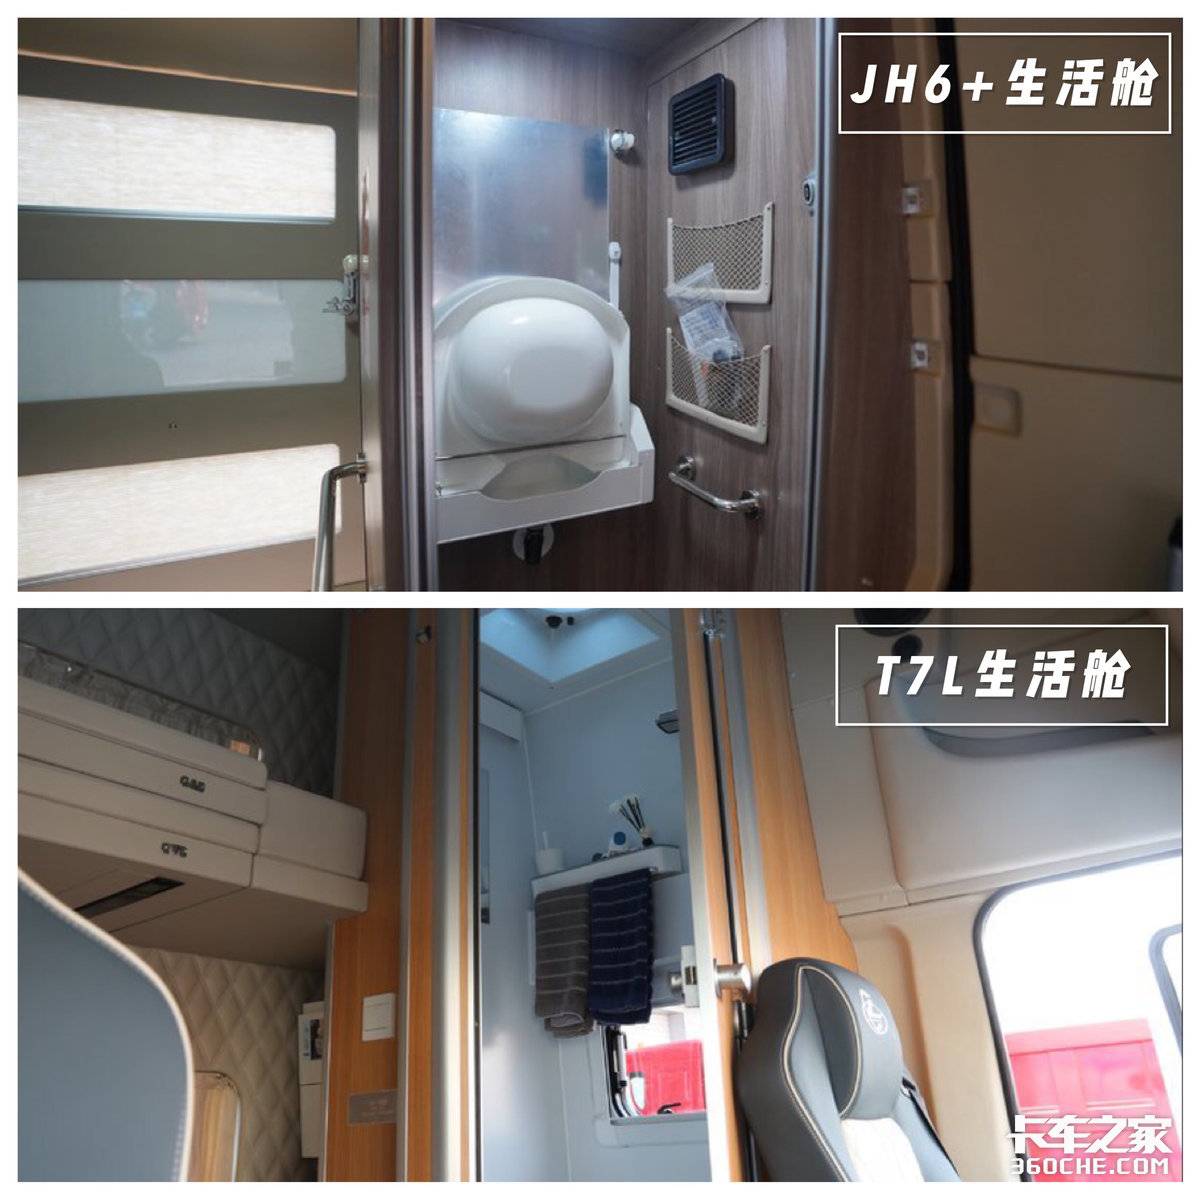 解放JH6 生活舱对比乘龙T7L生活舱 谁能更加适应国内运输场景